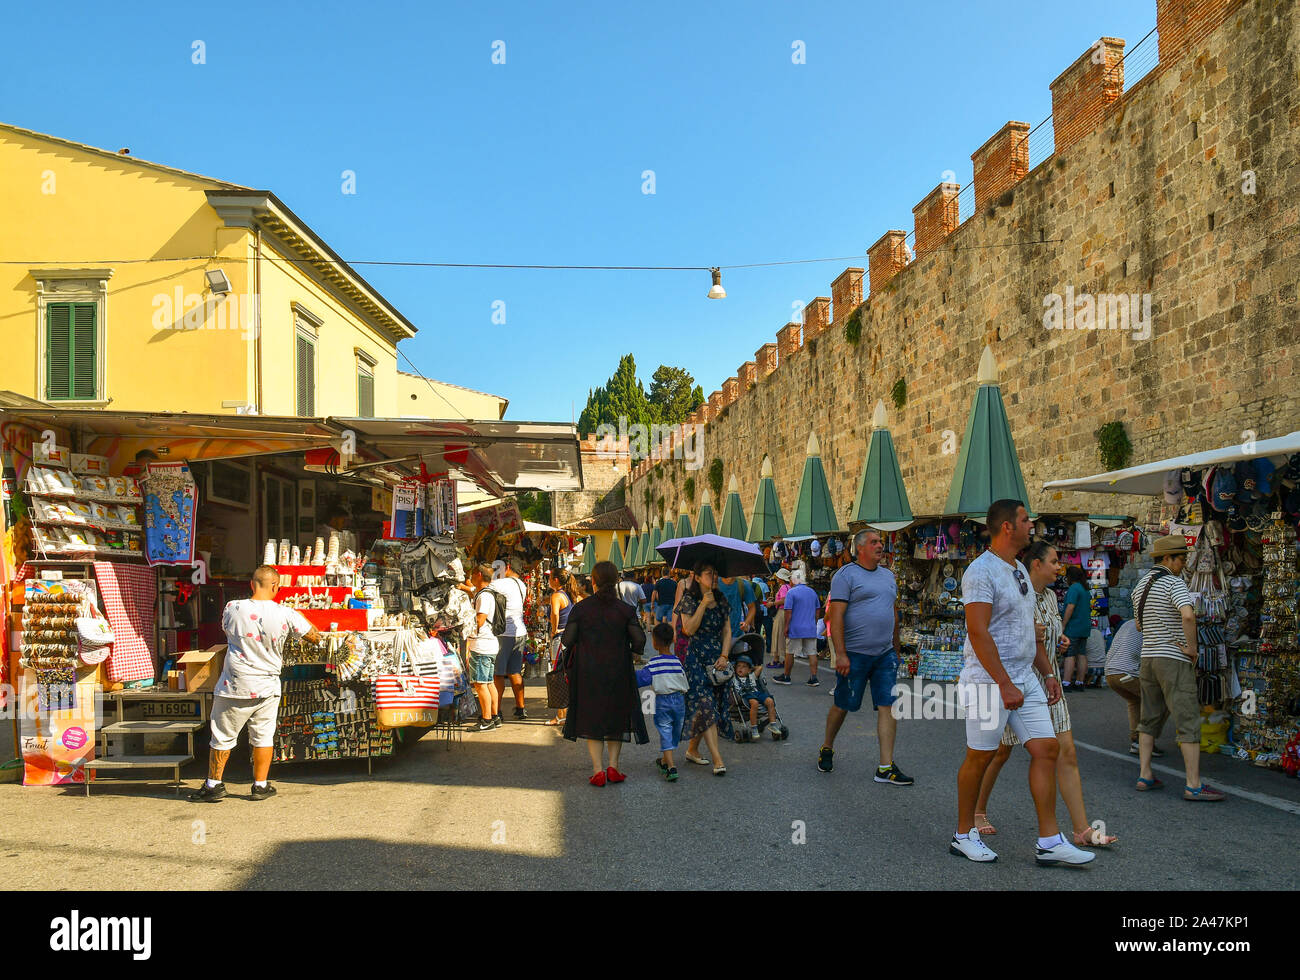 Vista de la calle del famoso destino turístico con gente comprando en puestos de venta de recuerdos y de las antiguas murallas de la ciudad en un día soleado de verano, Pisa, Toscana, Italia Foto de stock